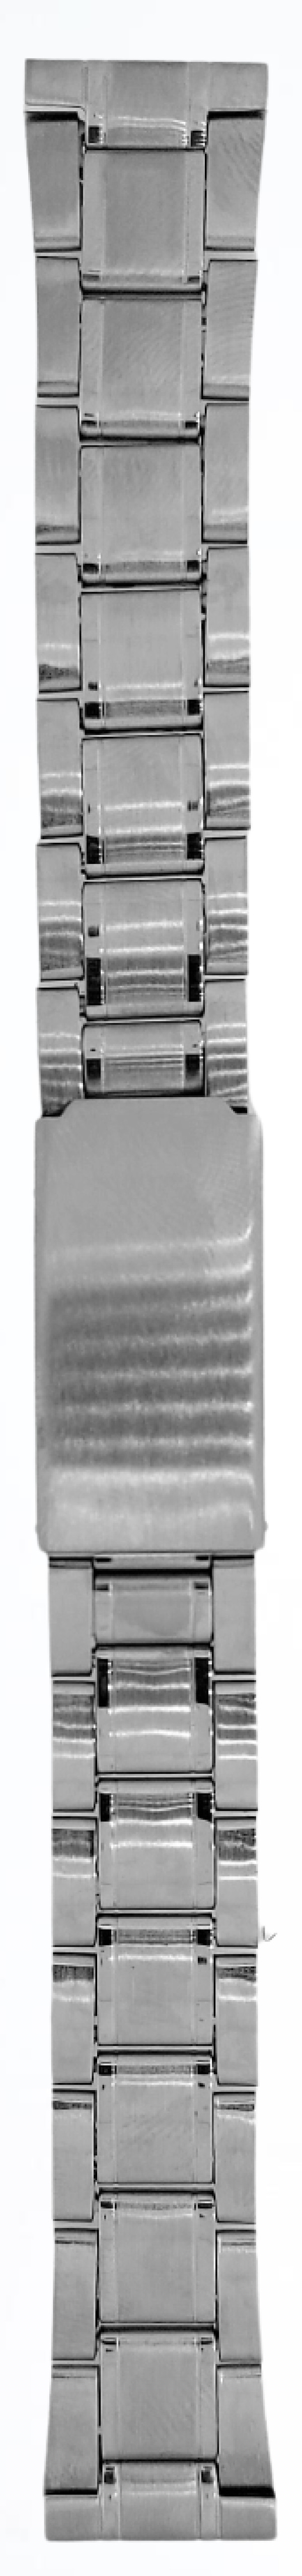 Metalni kaiš - MK18.03/1 Srebrni 18mm